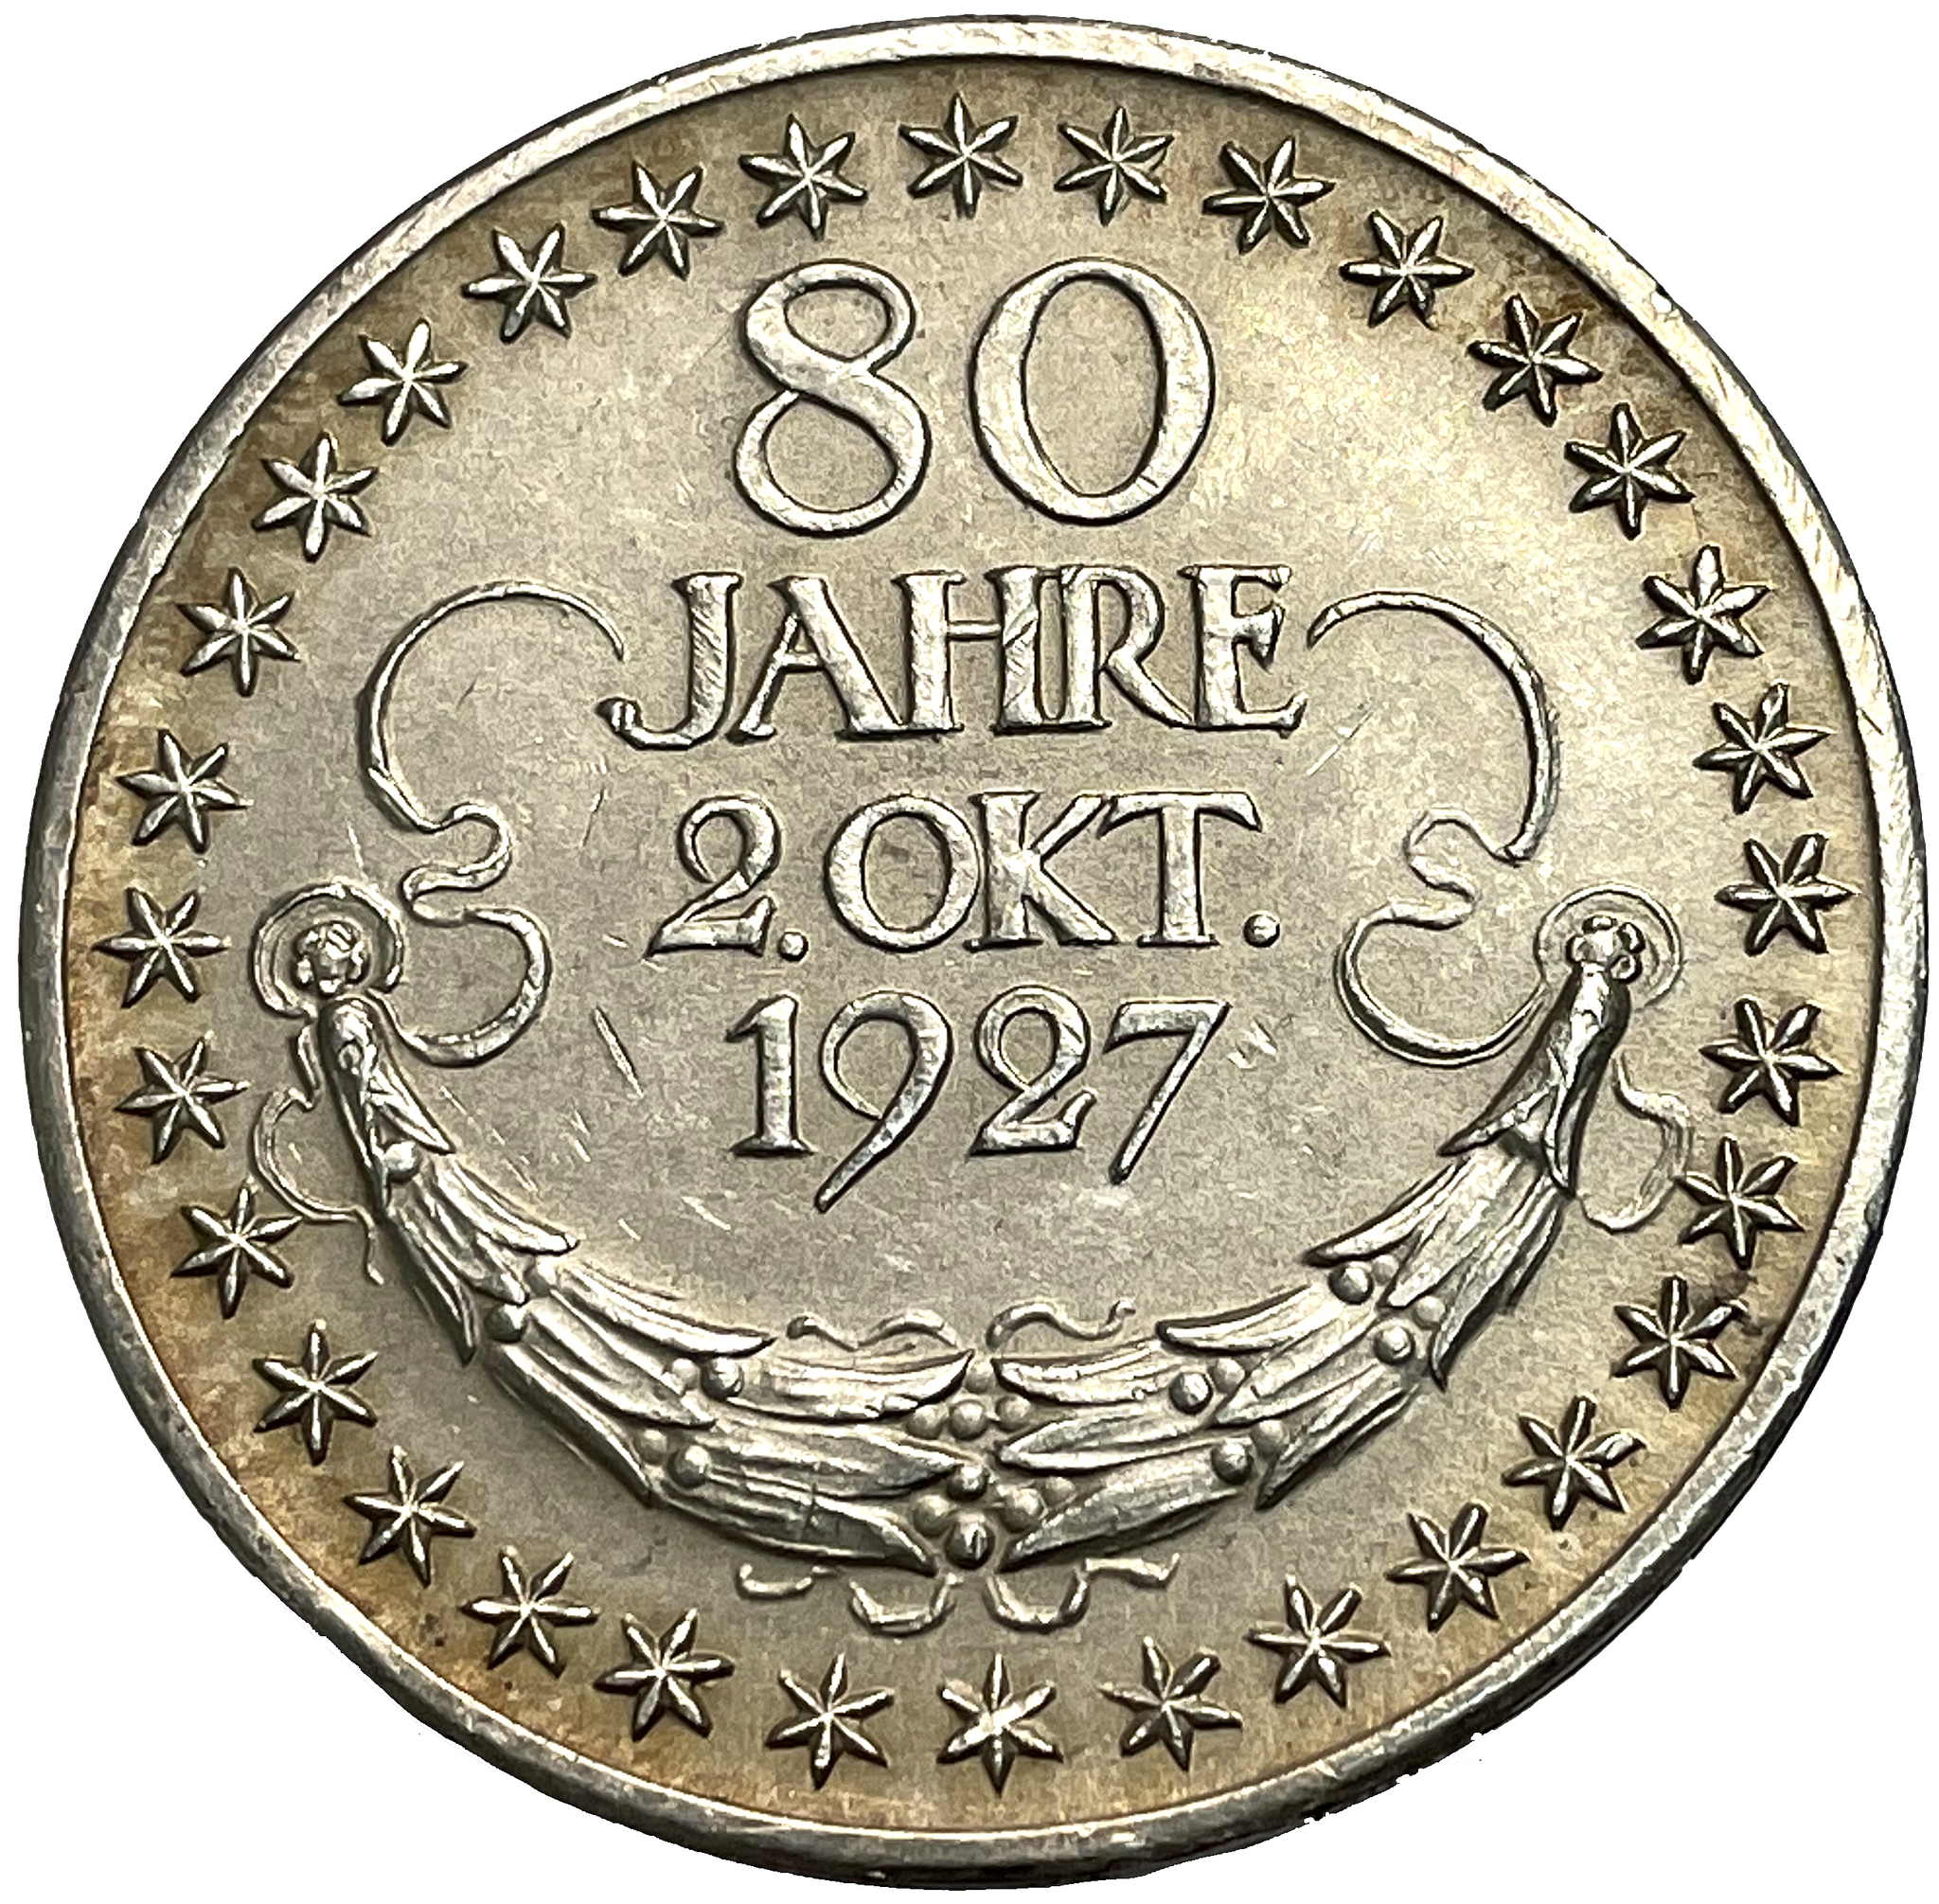 Minnesmedalj med anledning av Hindeburgs 80-årsdag 1847-1927